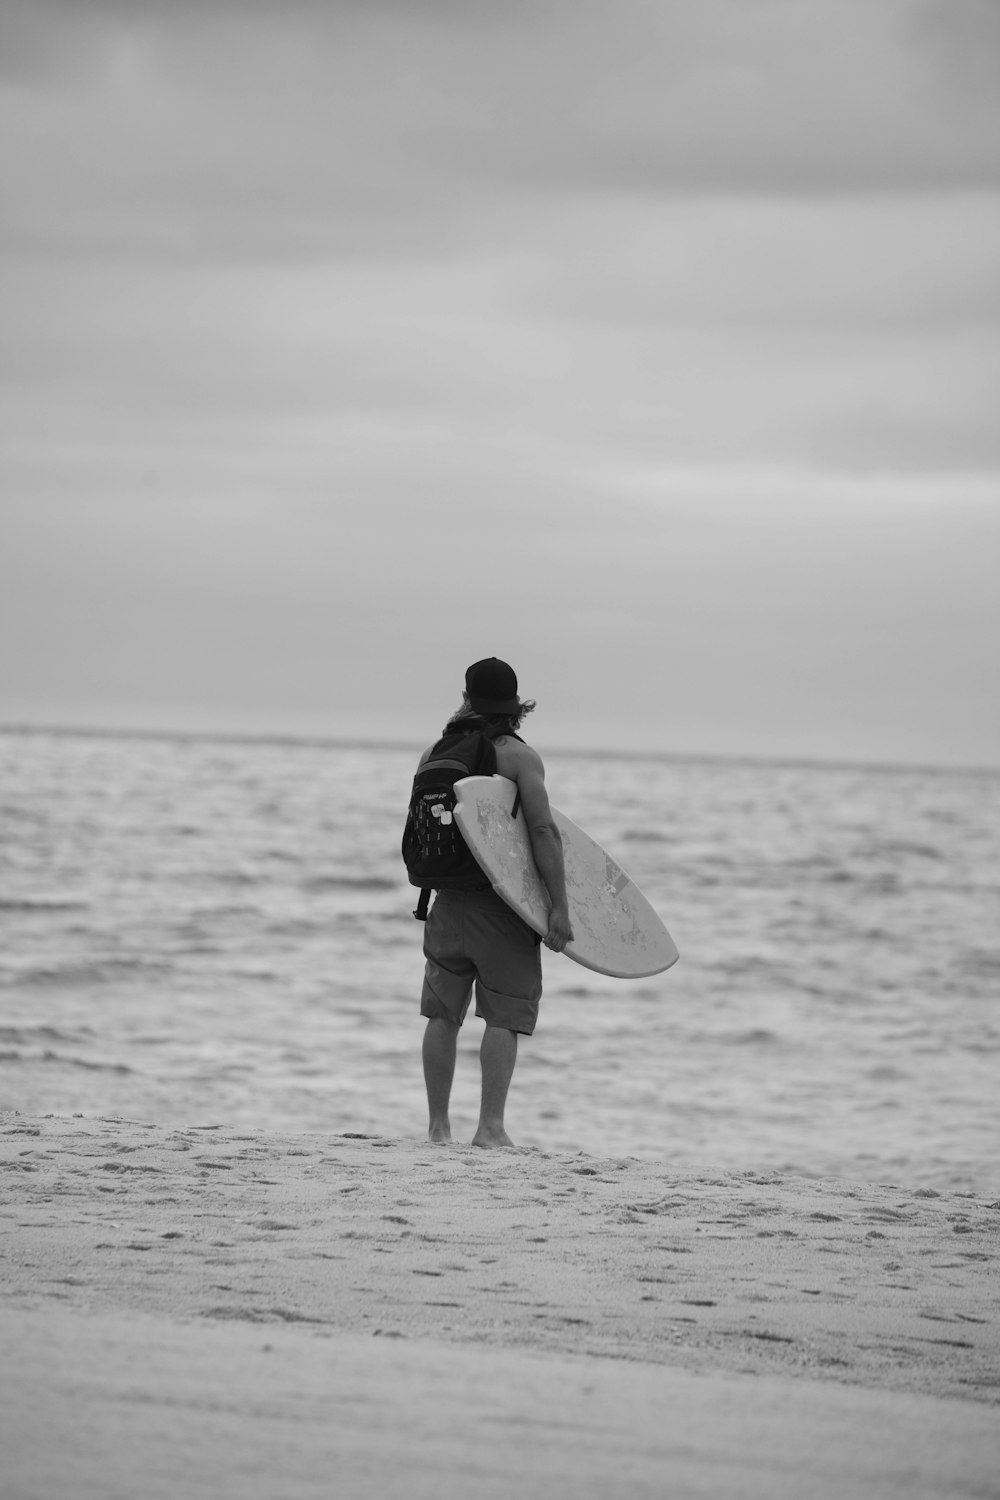 모래사장 위에서 서핑보드를 들고 있는 남자